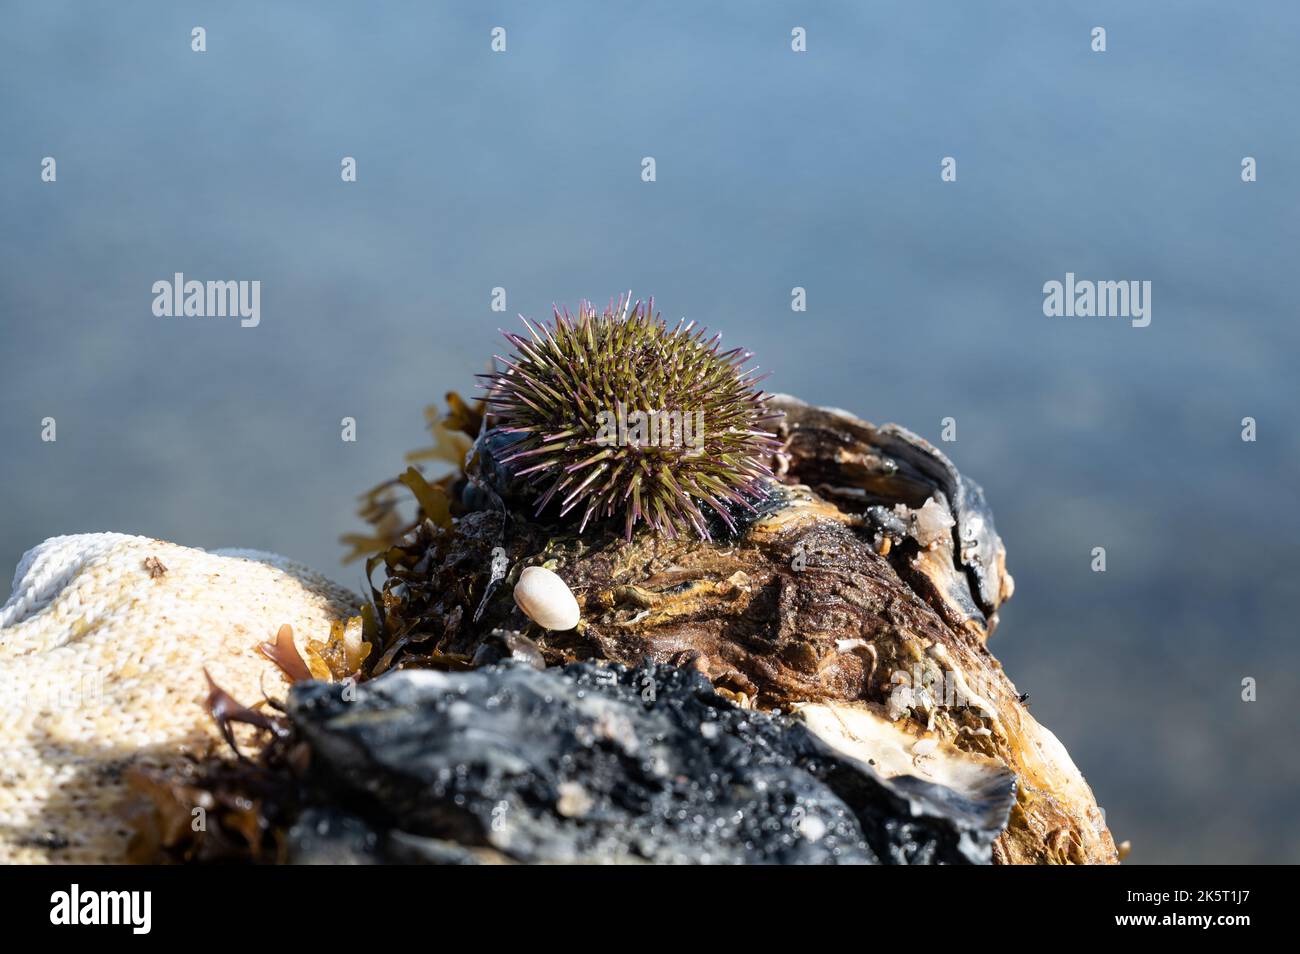 Grüner Seeigel oder Uferseeigel (Psammechinus miliaris) auf einer Austernschale Stockfoto